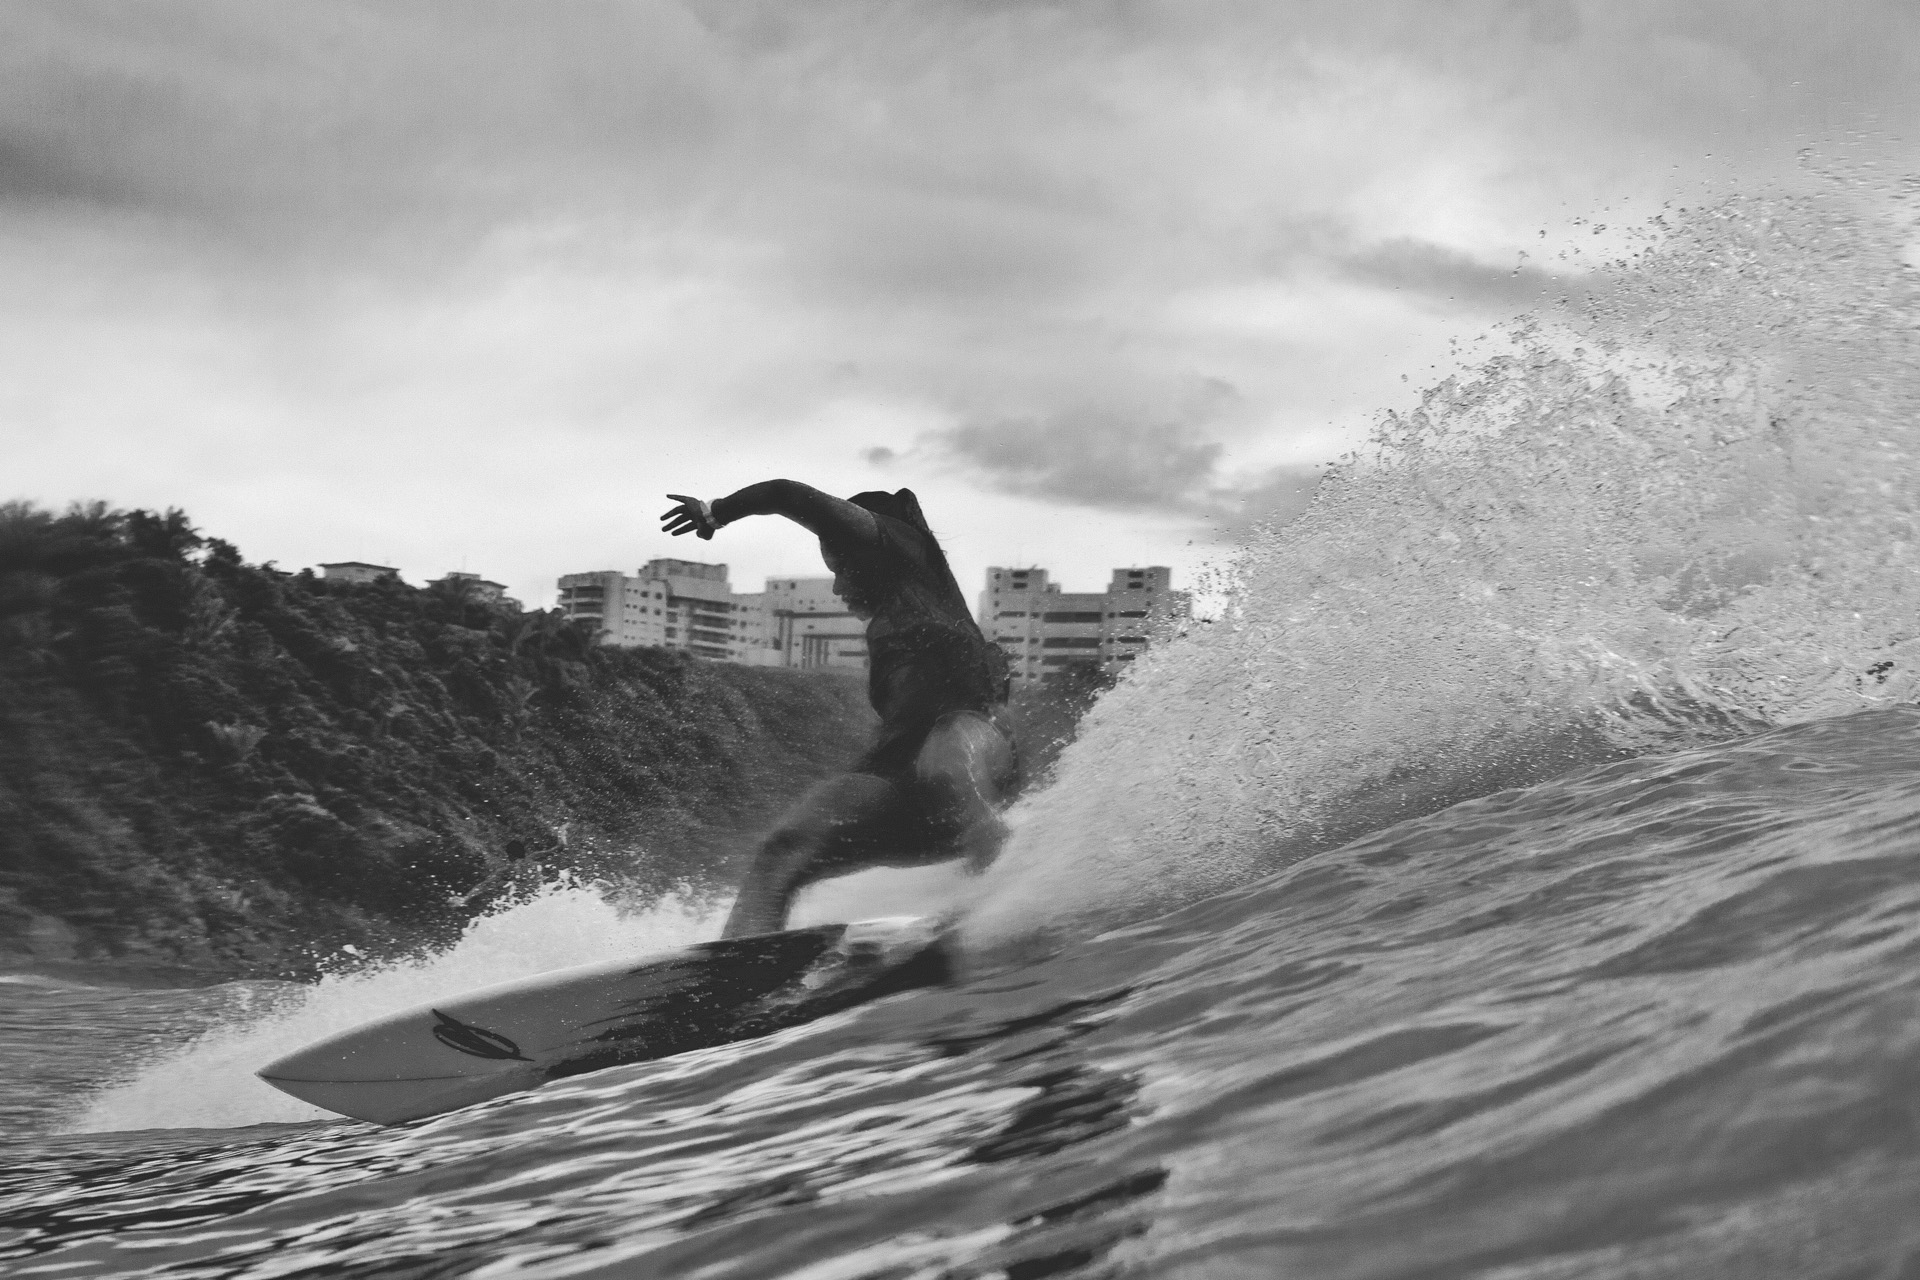 Maior swell de inverno e outras notícias do surf